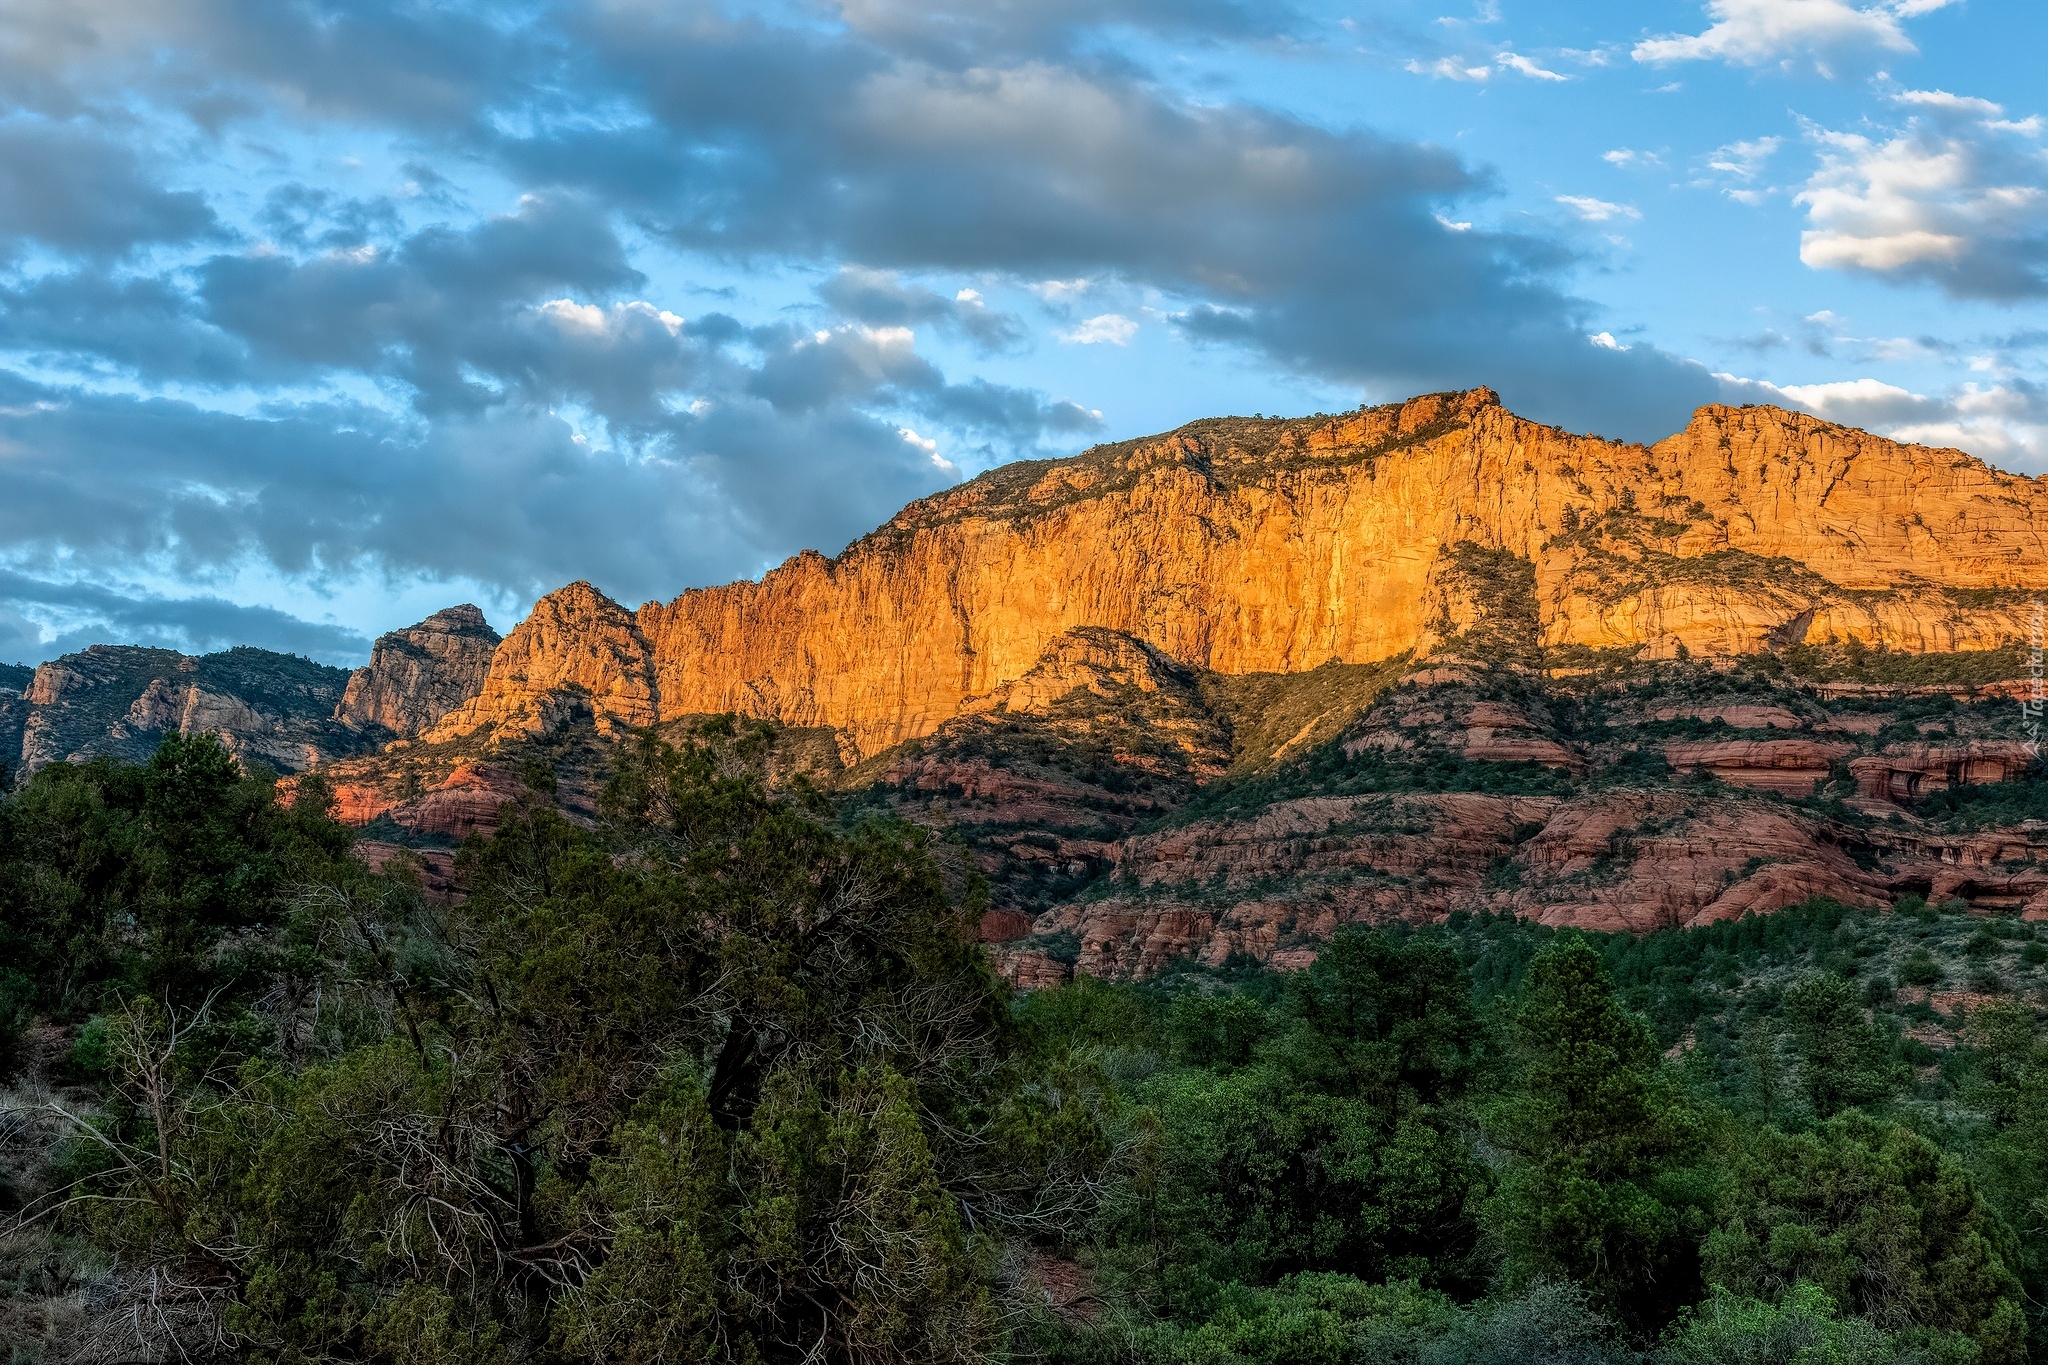 Kanion Oak Creek Canyon, Park Stanowy Slide Rock, Kanion, Drzewa, Góry, Skały, Lasy, Stan Arizona, Stany Zjednoczone